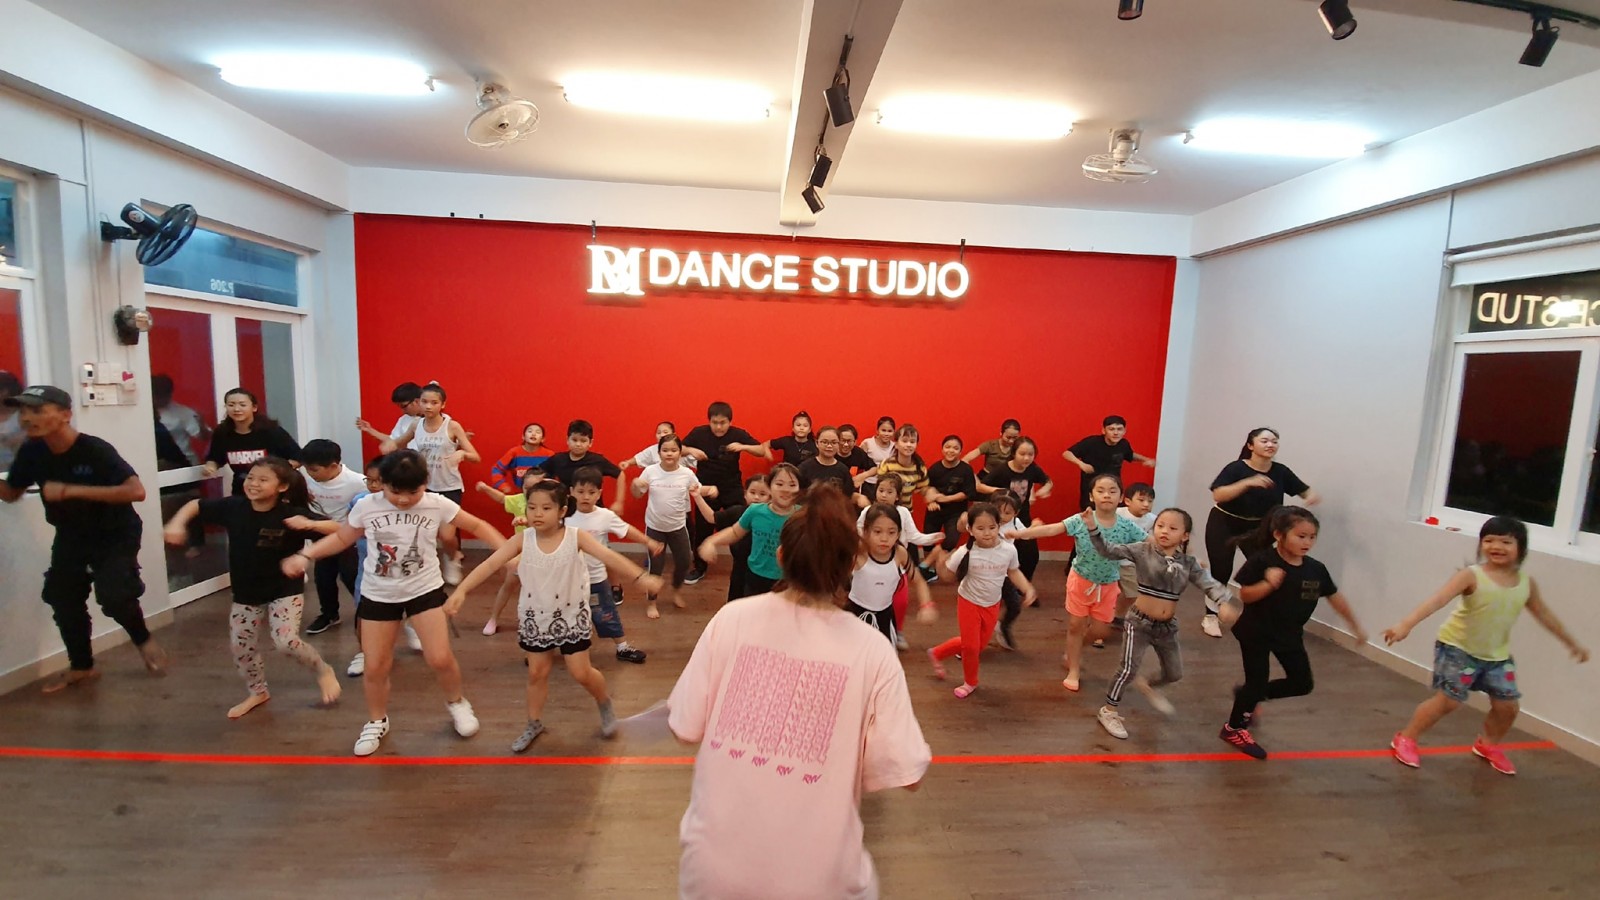 2 phương pháp tăng doanh thu giúp Dance Studio mới mở có thể phát triển bền vững hơn